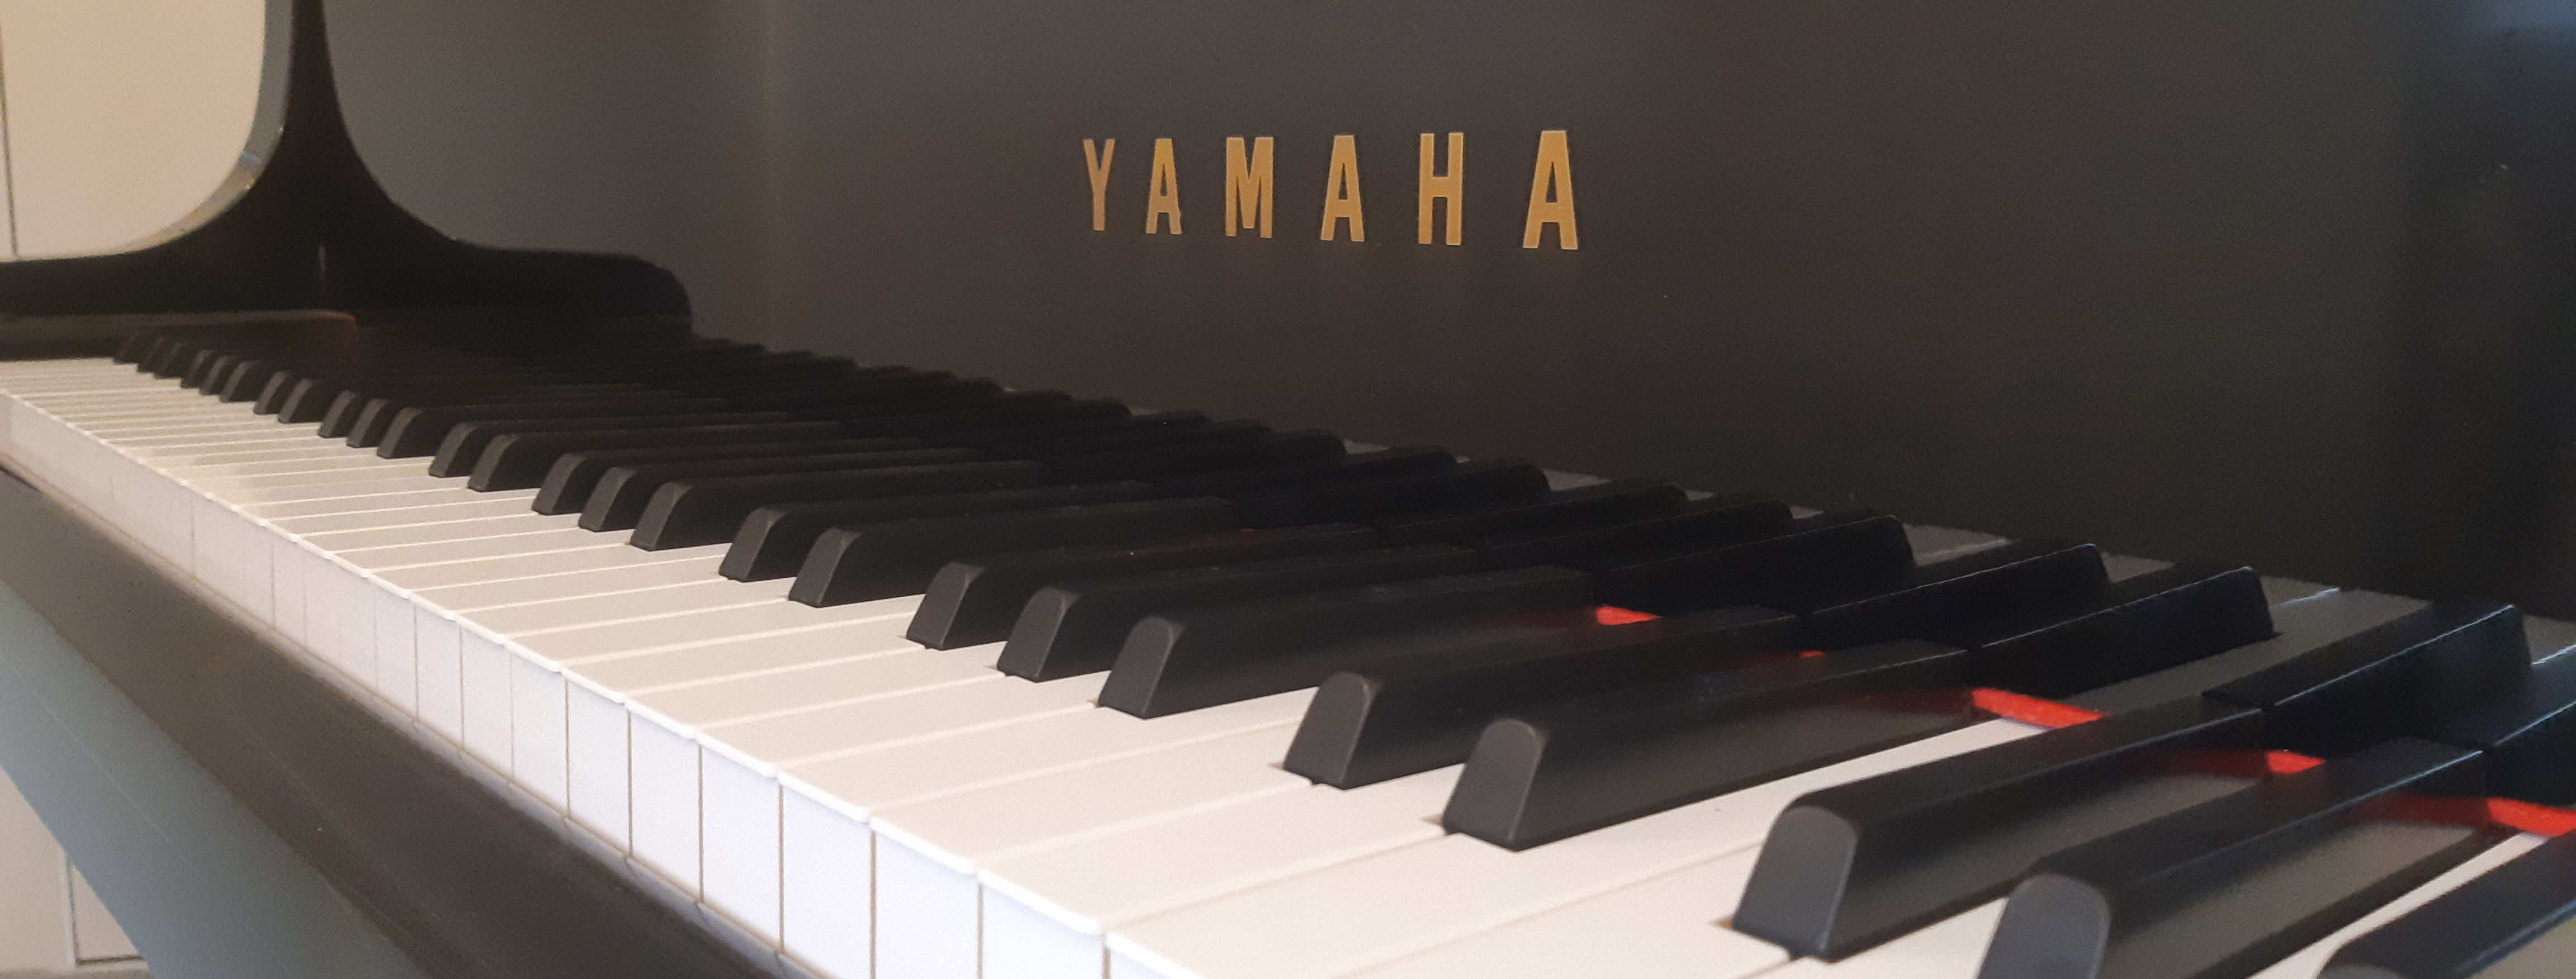 piano keys yamaha